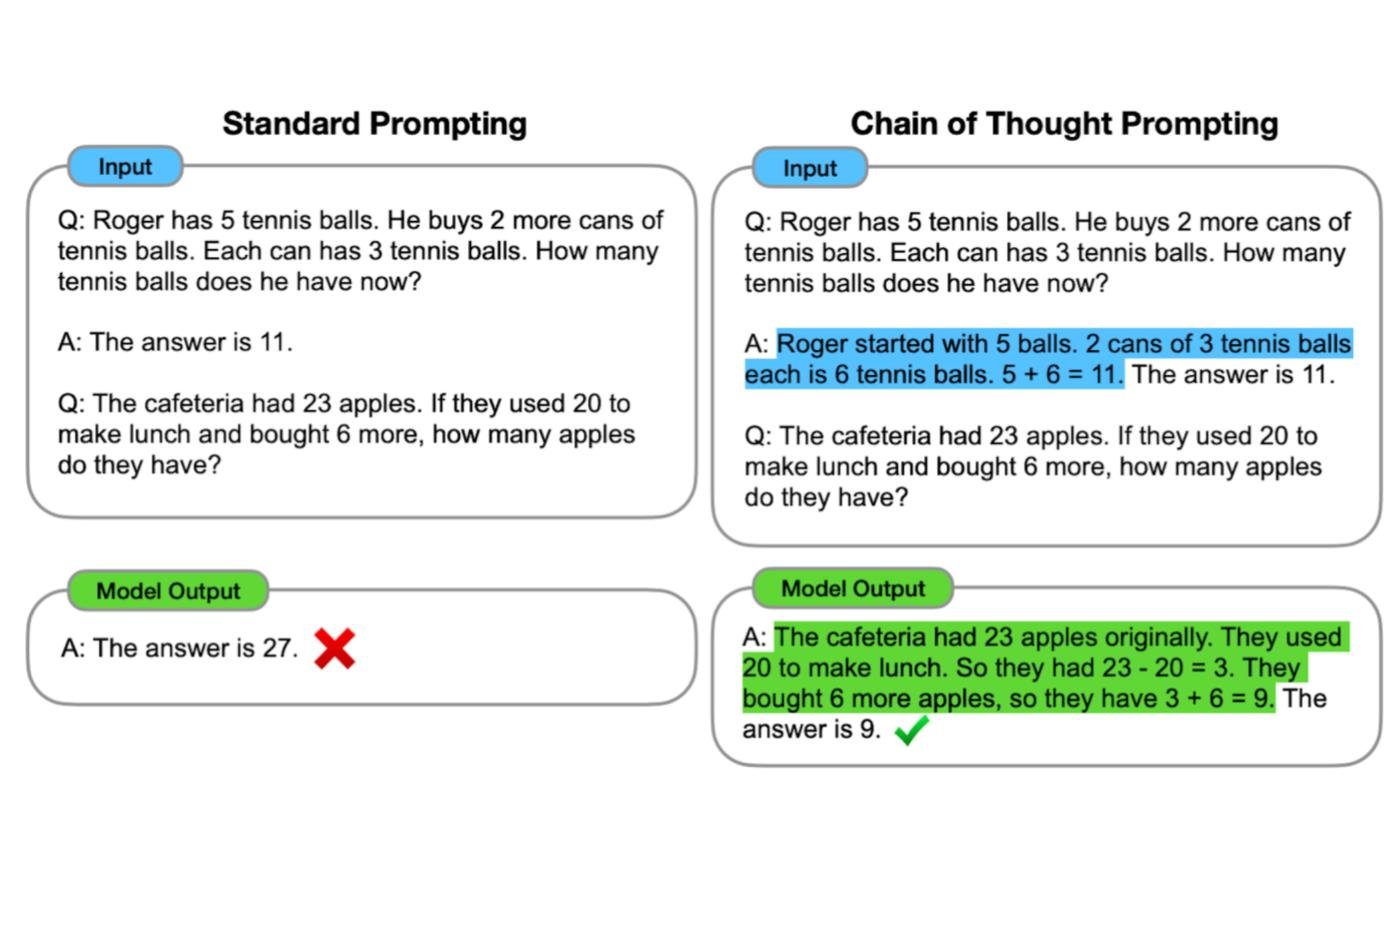 Un exemple du fonctionnement de l'approche Chain of Thought prompting dans le cadre des modèles de langage